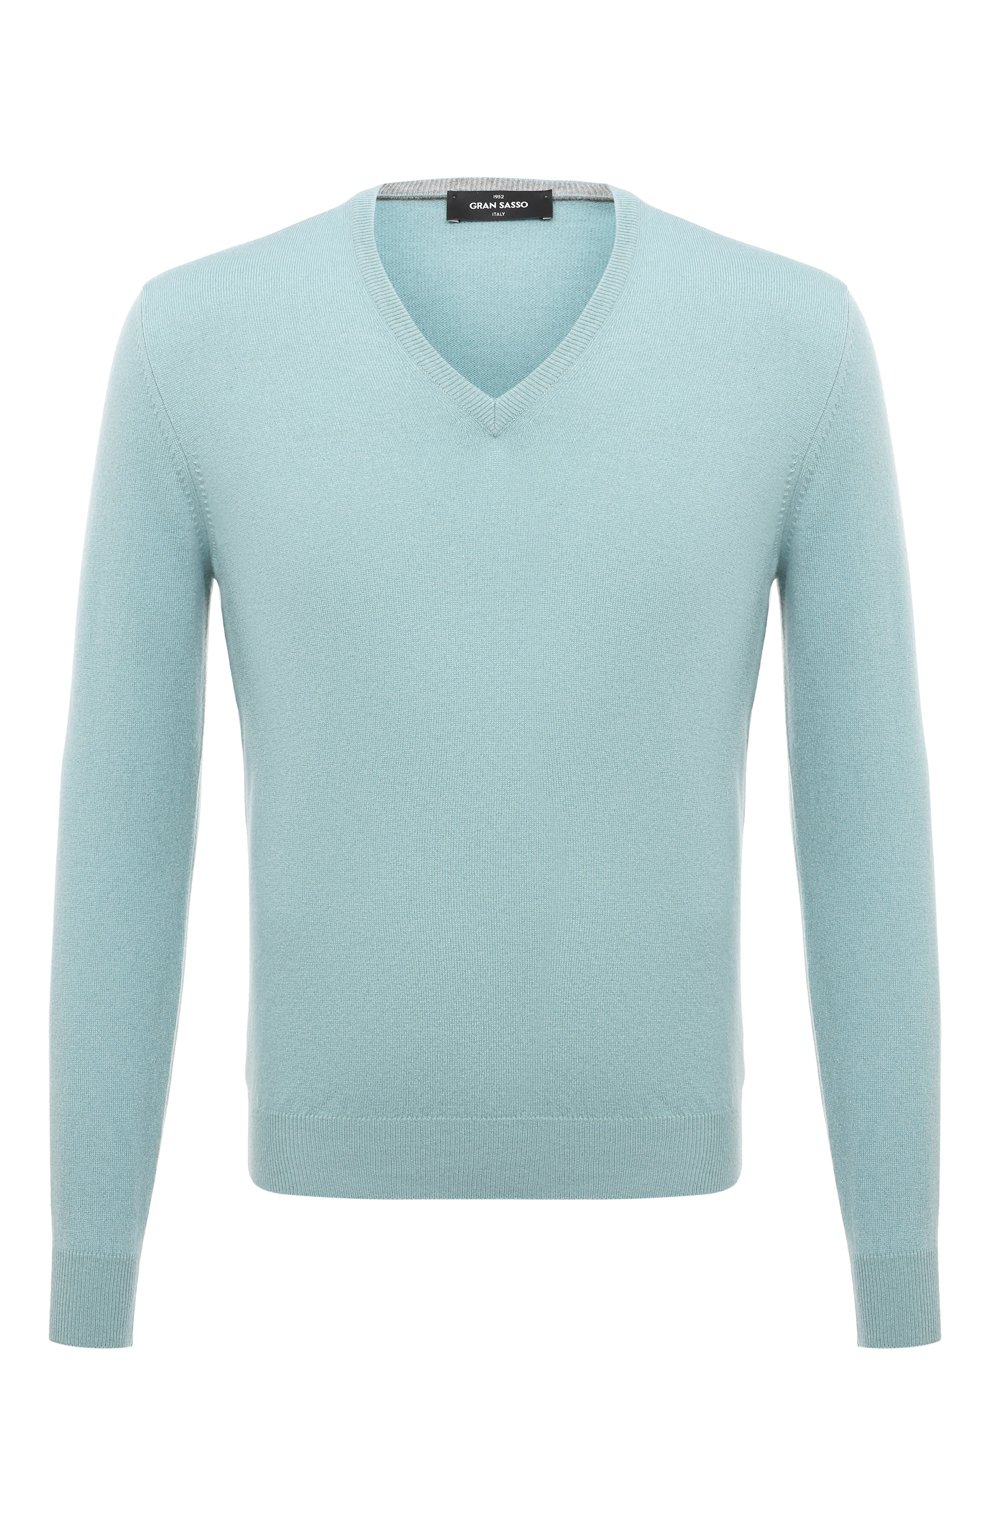 Кашемировый пуловер Gran Sasso 55115/15590, цвет голубой, размер 48